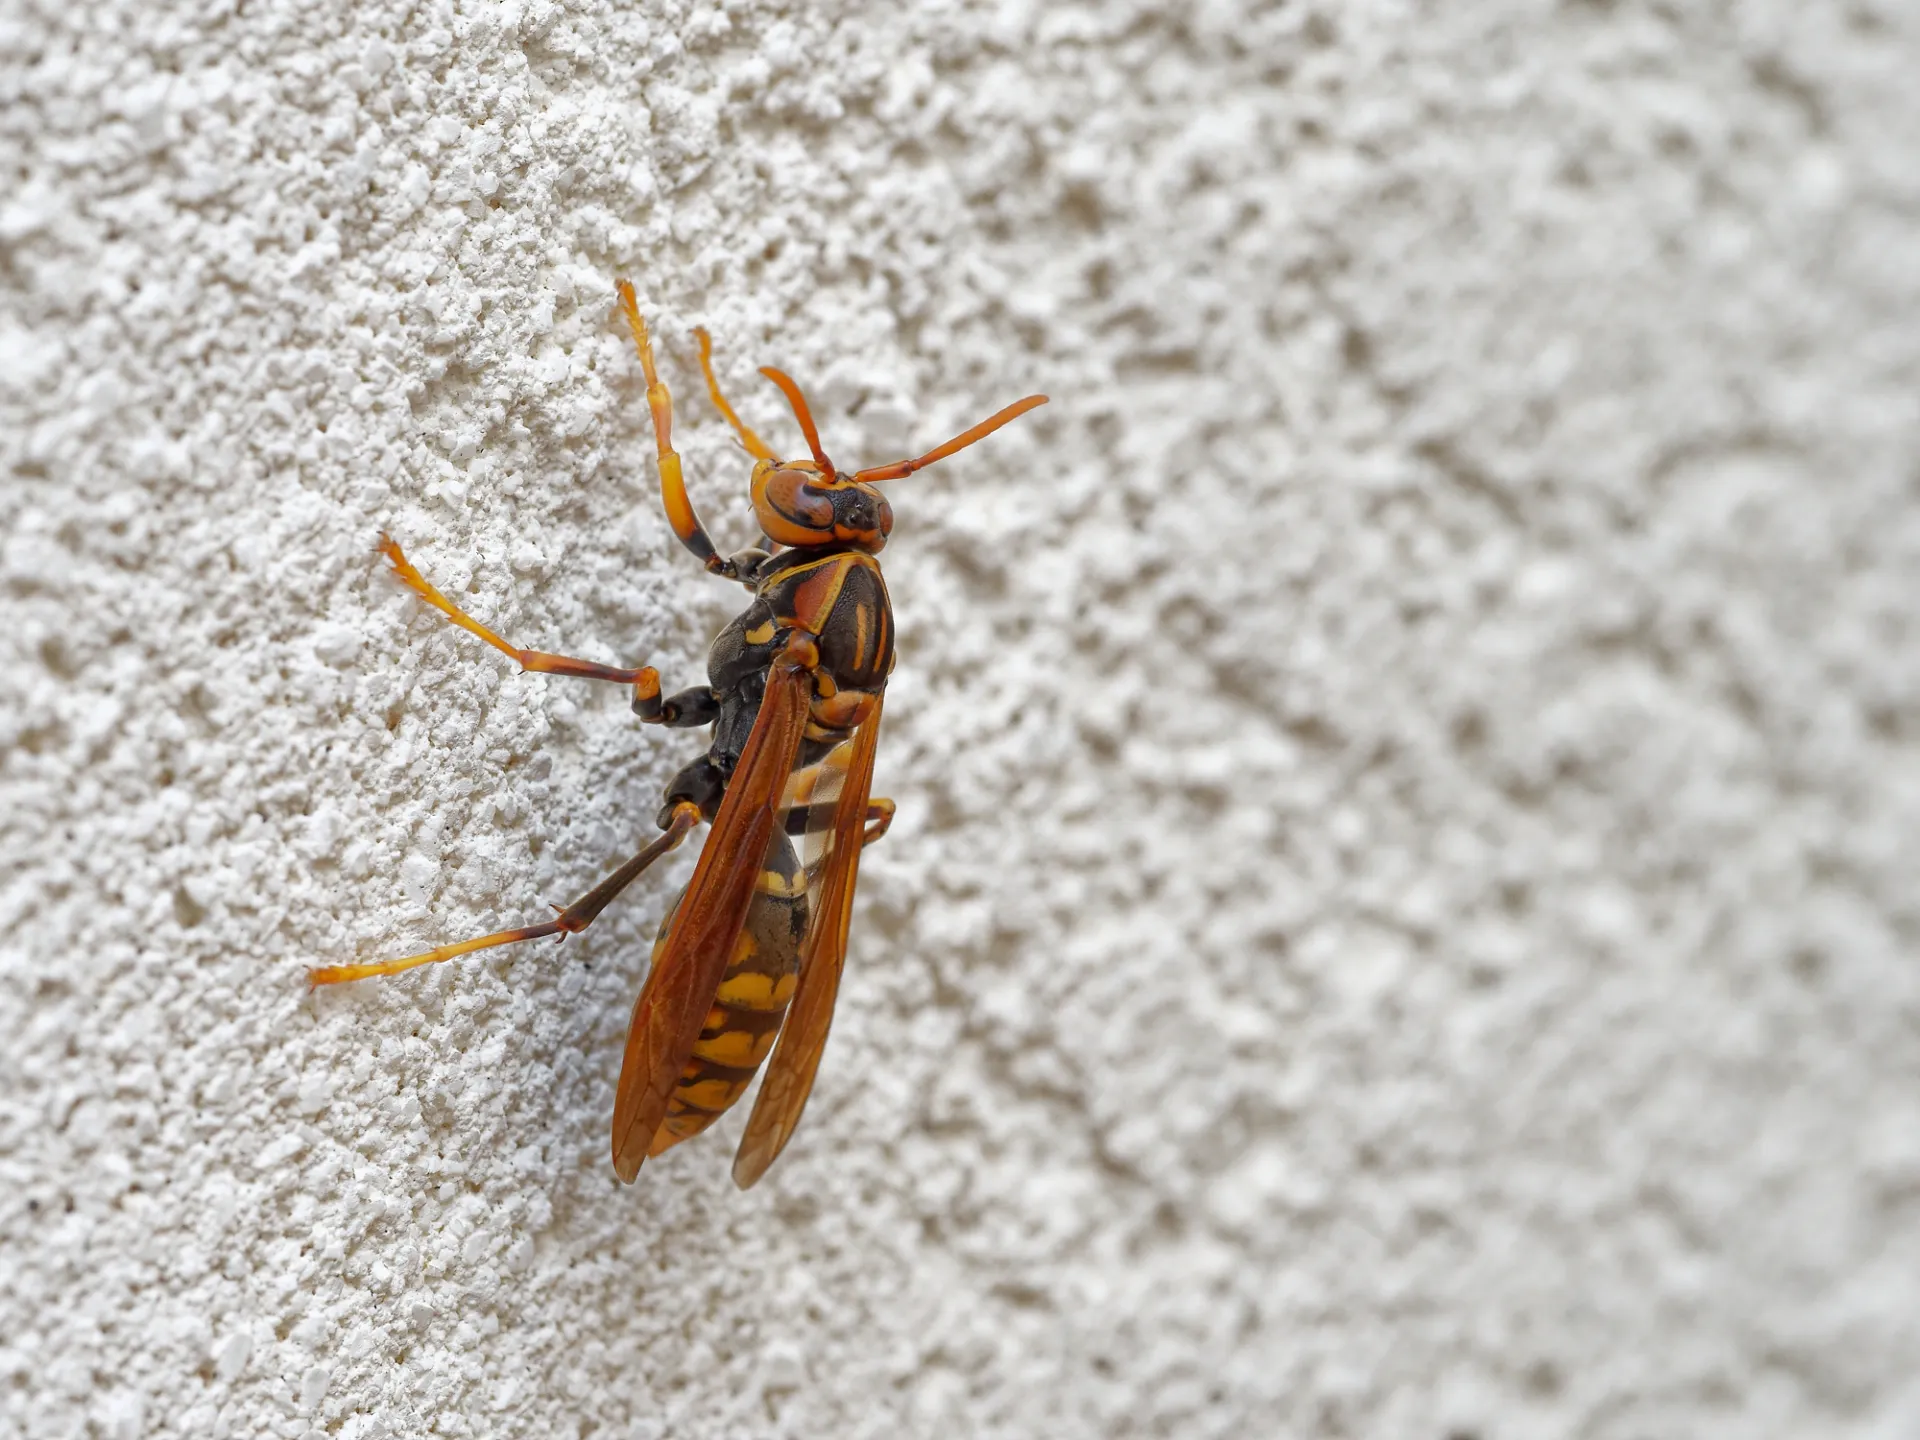 土浦市で蜂駆除する時に白い壁に止まっているアシナガバチ